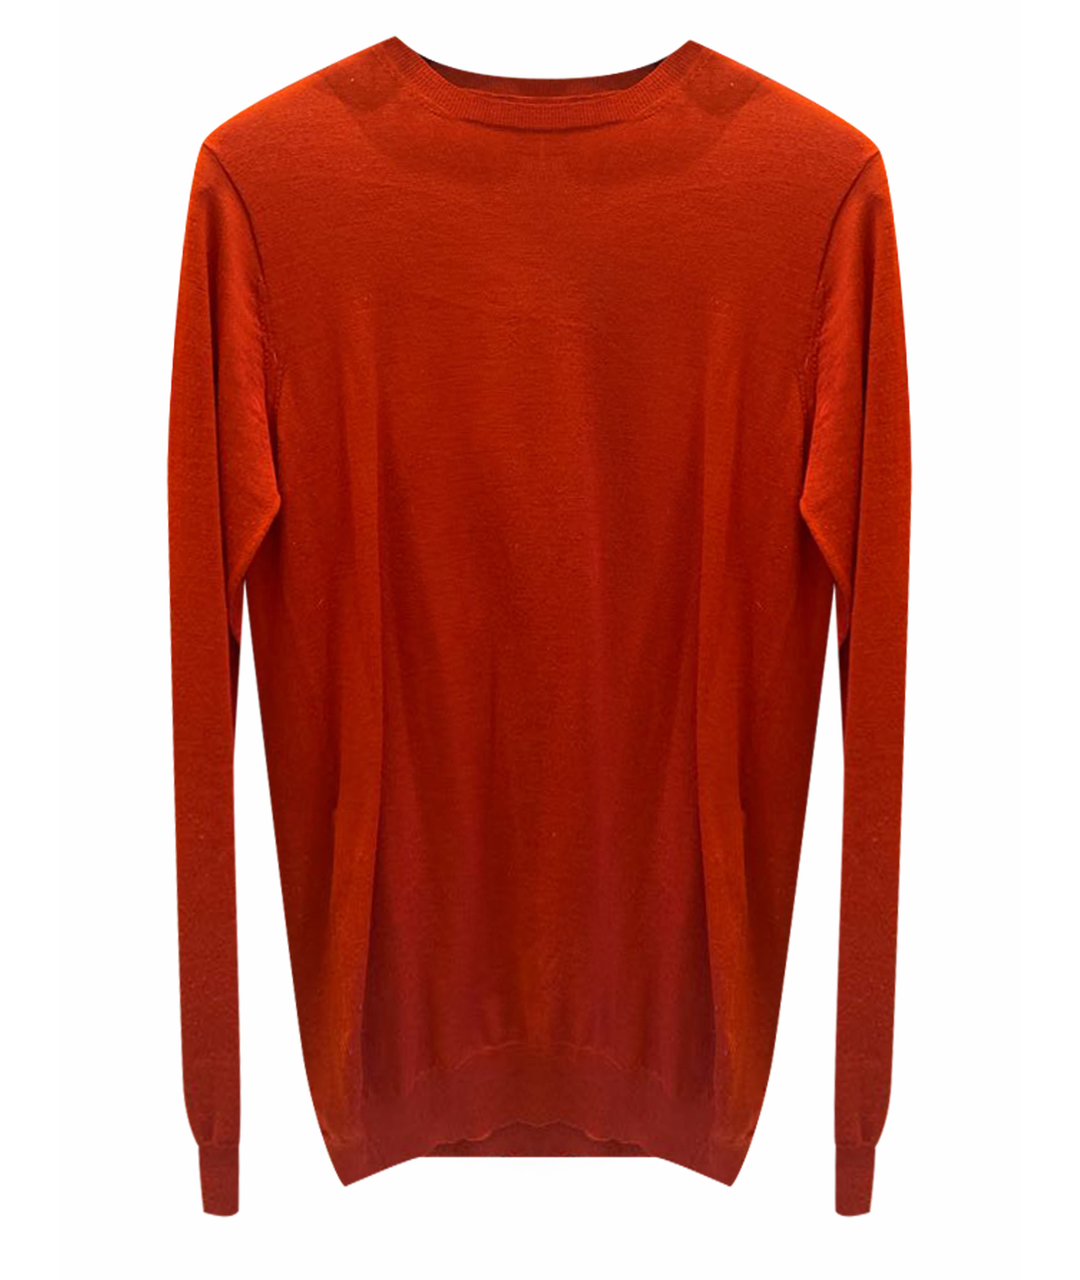 PRADA Бордовый шерстяной джемпер / свитер, фото 1